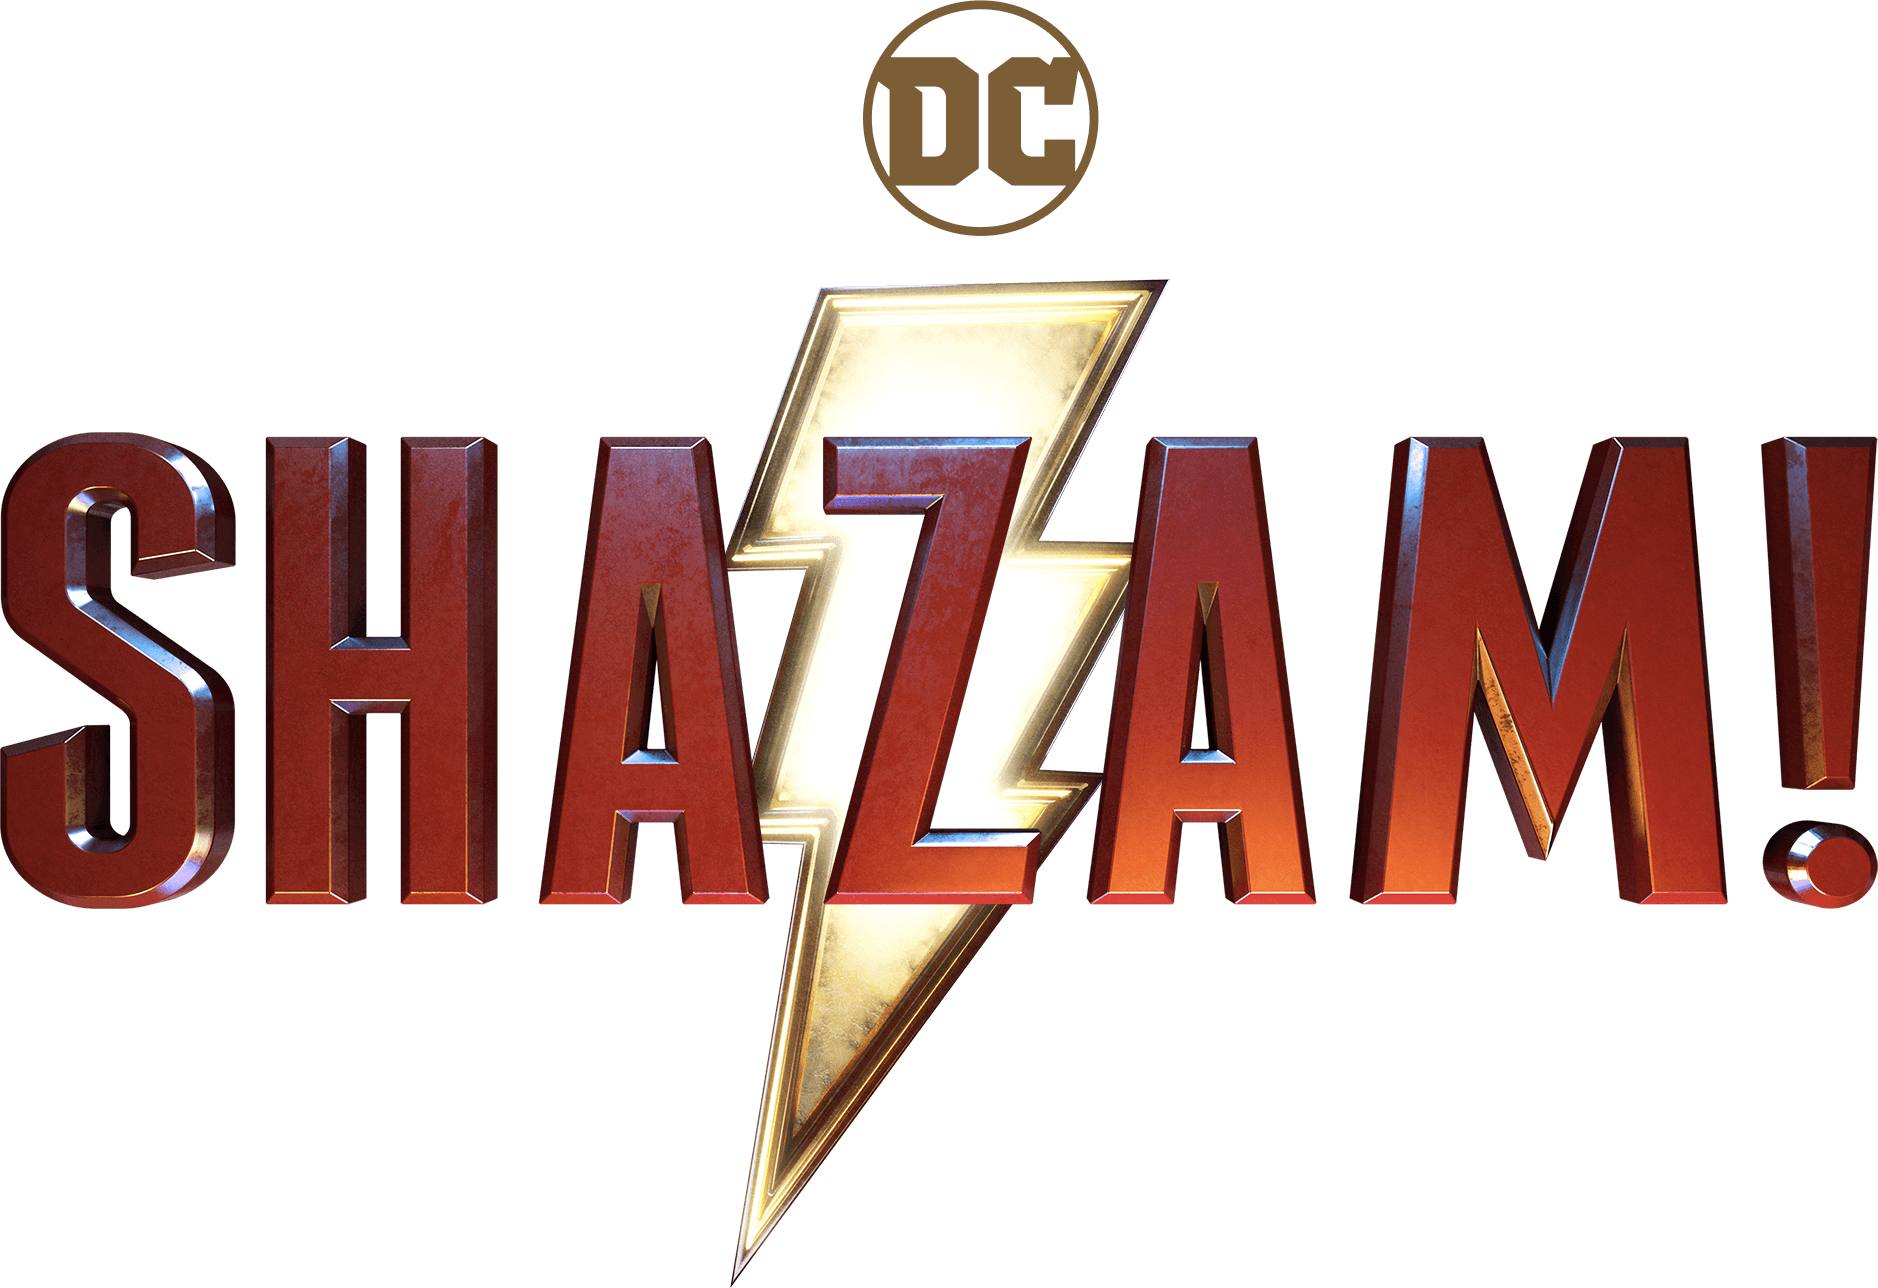 Shazam! logo